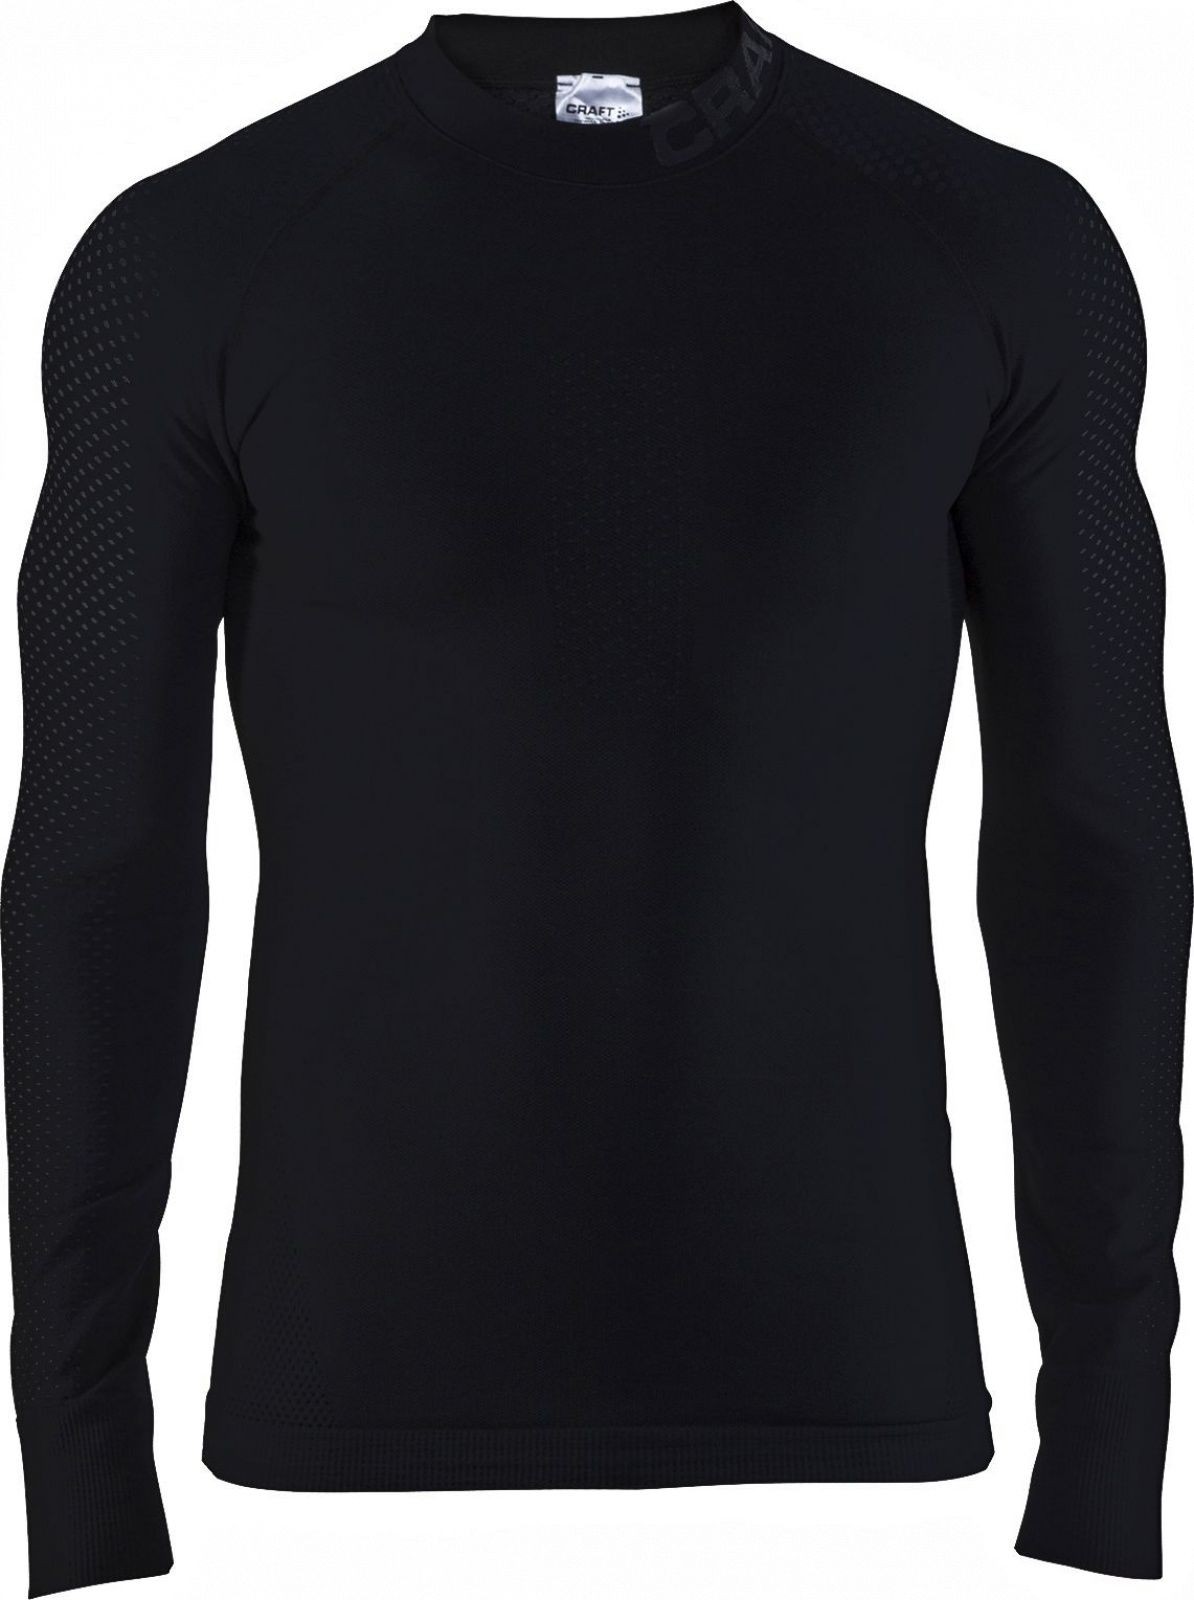 Craft warm intensity CN sous-vêtement manches longues noir